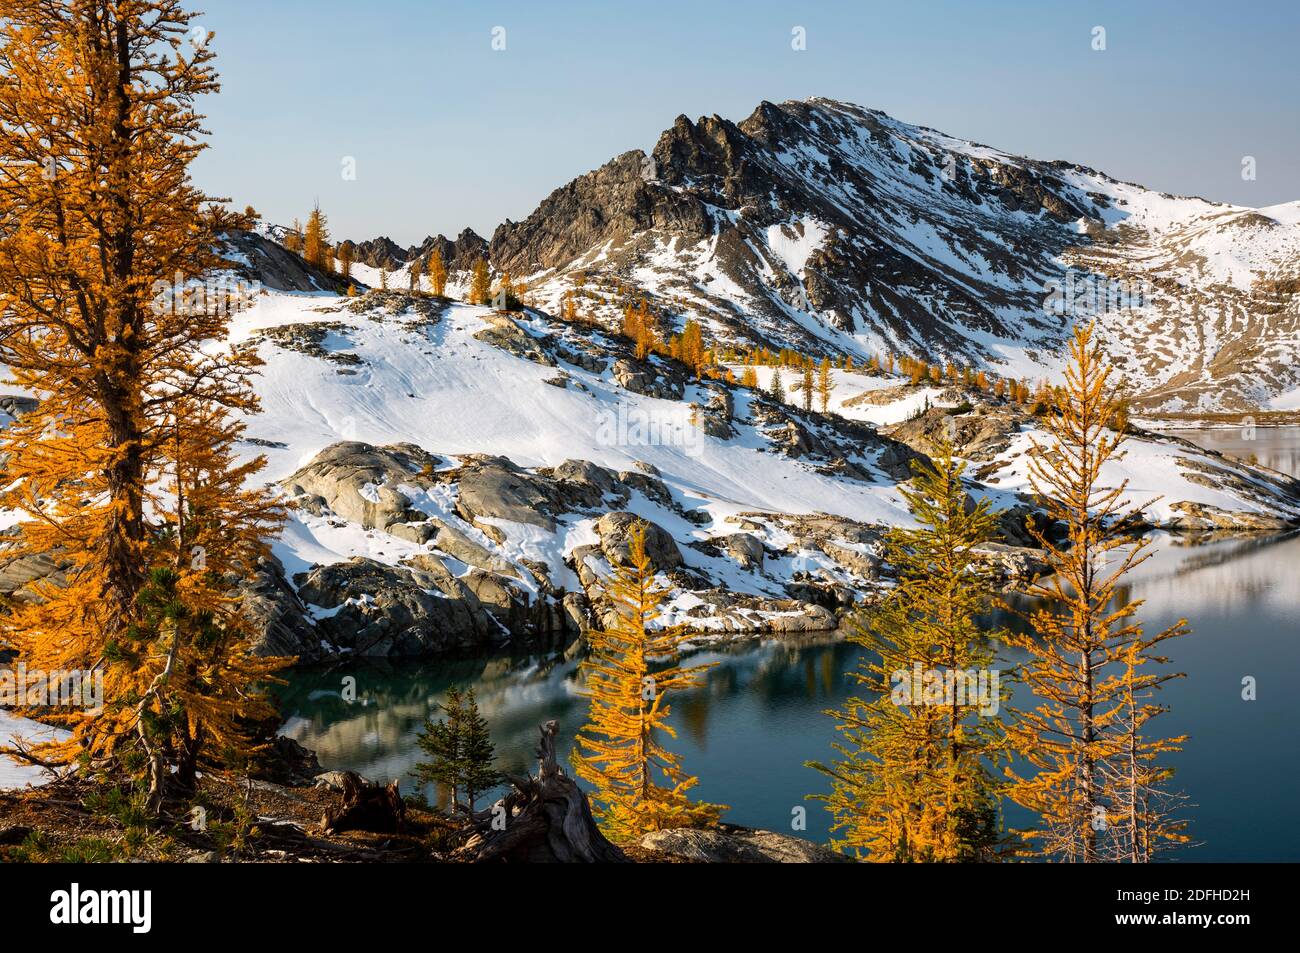 WA18666-00...WASHINGTON - temps d'automne à Upper Ice Lake, dans la région sauvage de Glacier Peak, dans la forêt nationale de Wenatchee. Banque D'Images